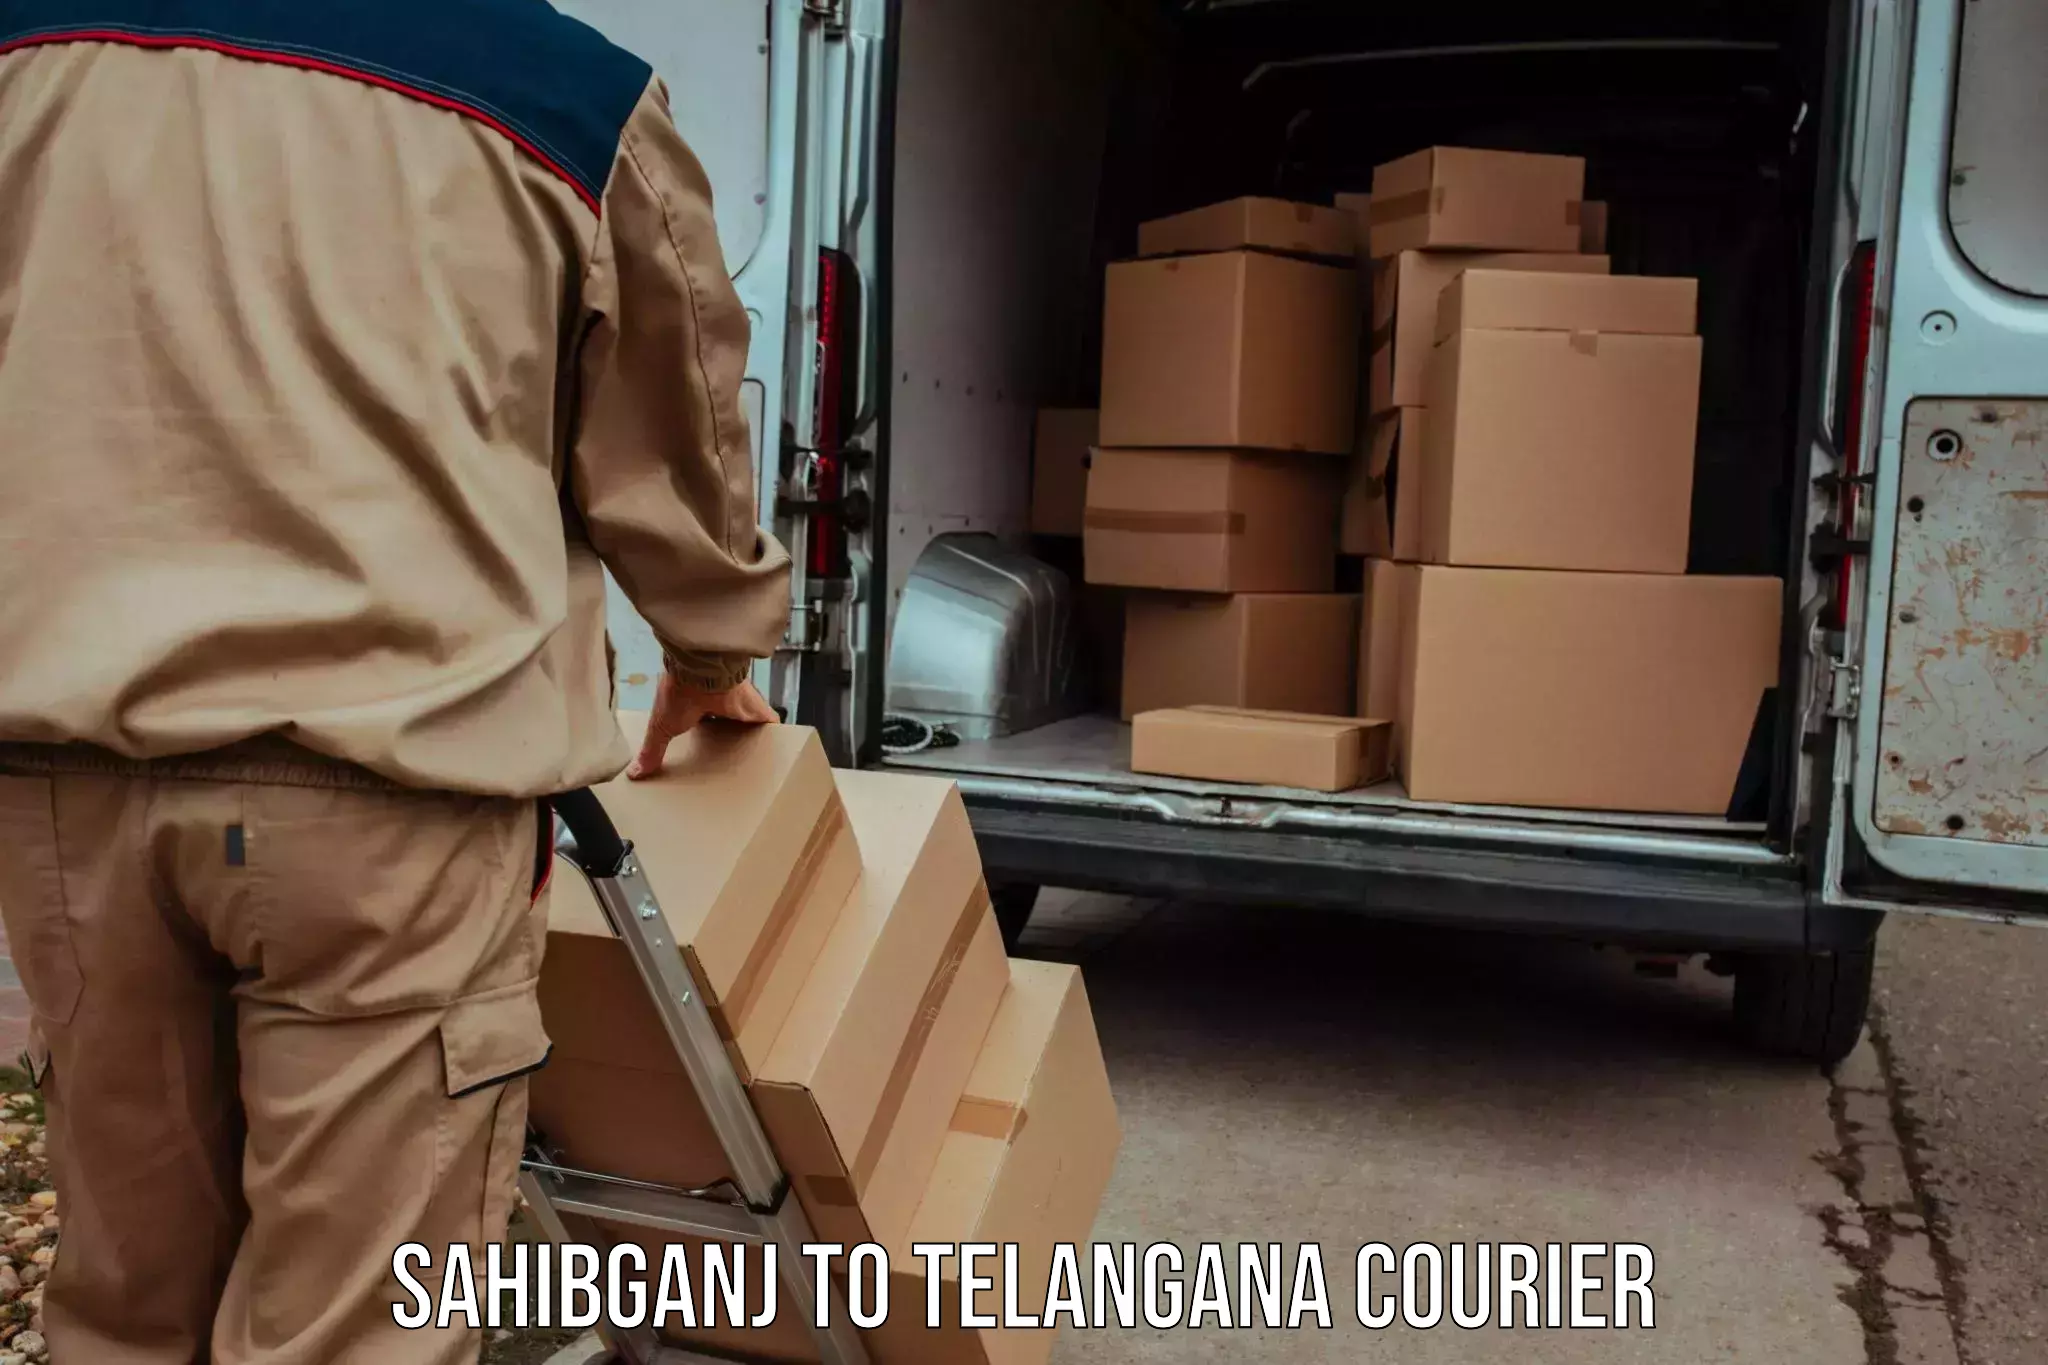 Subscription-based courier Sahibganj to Telangana